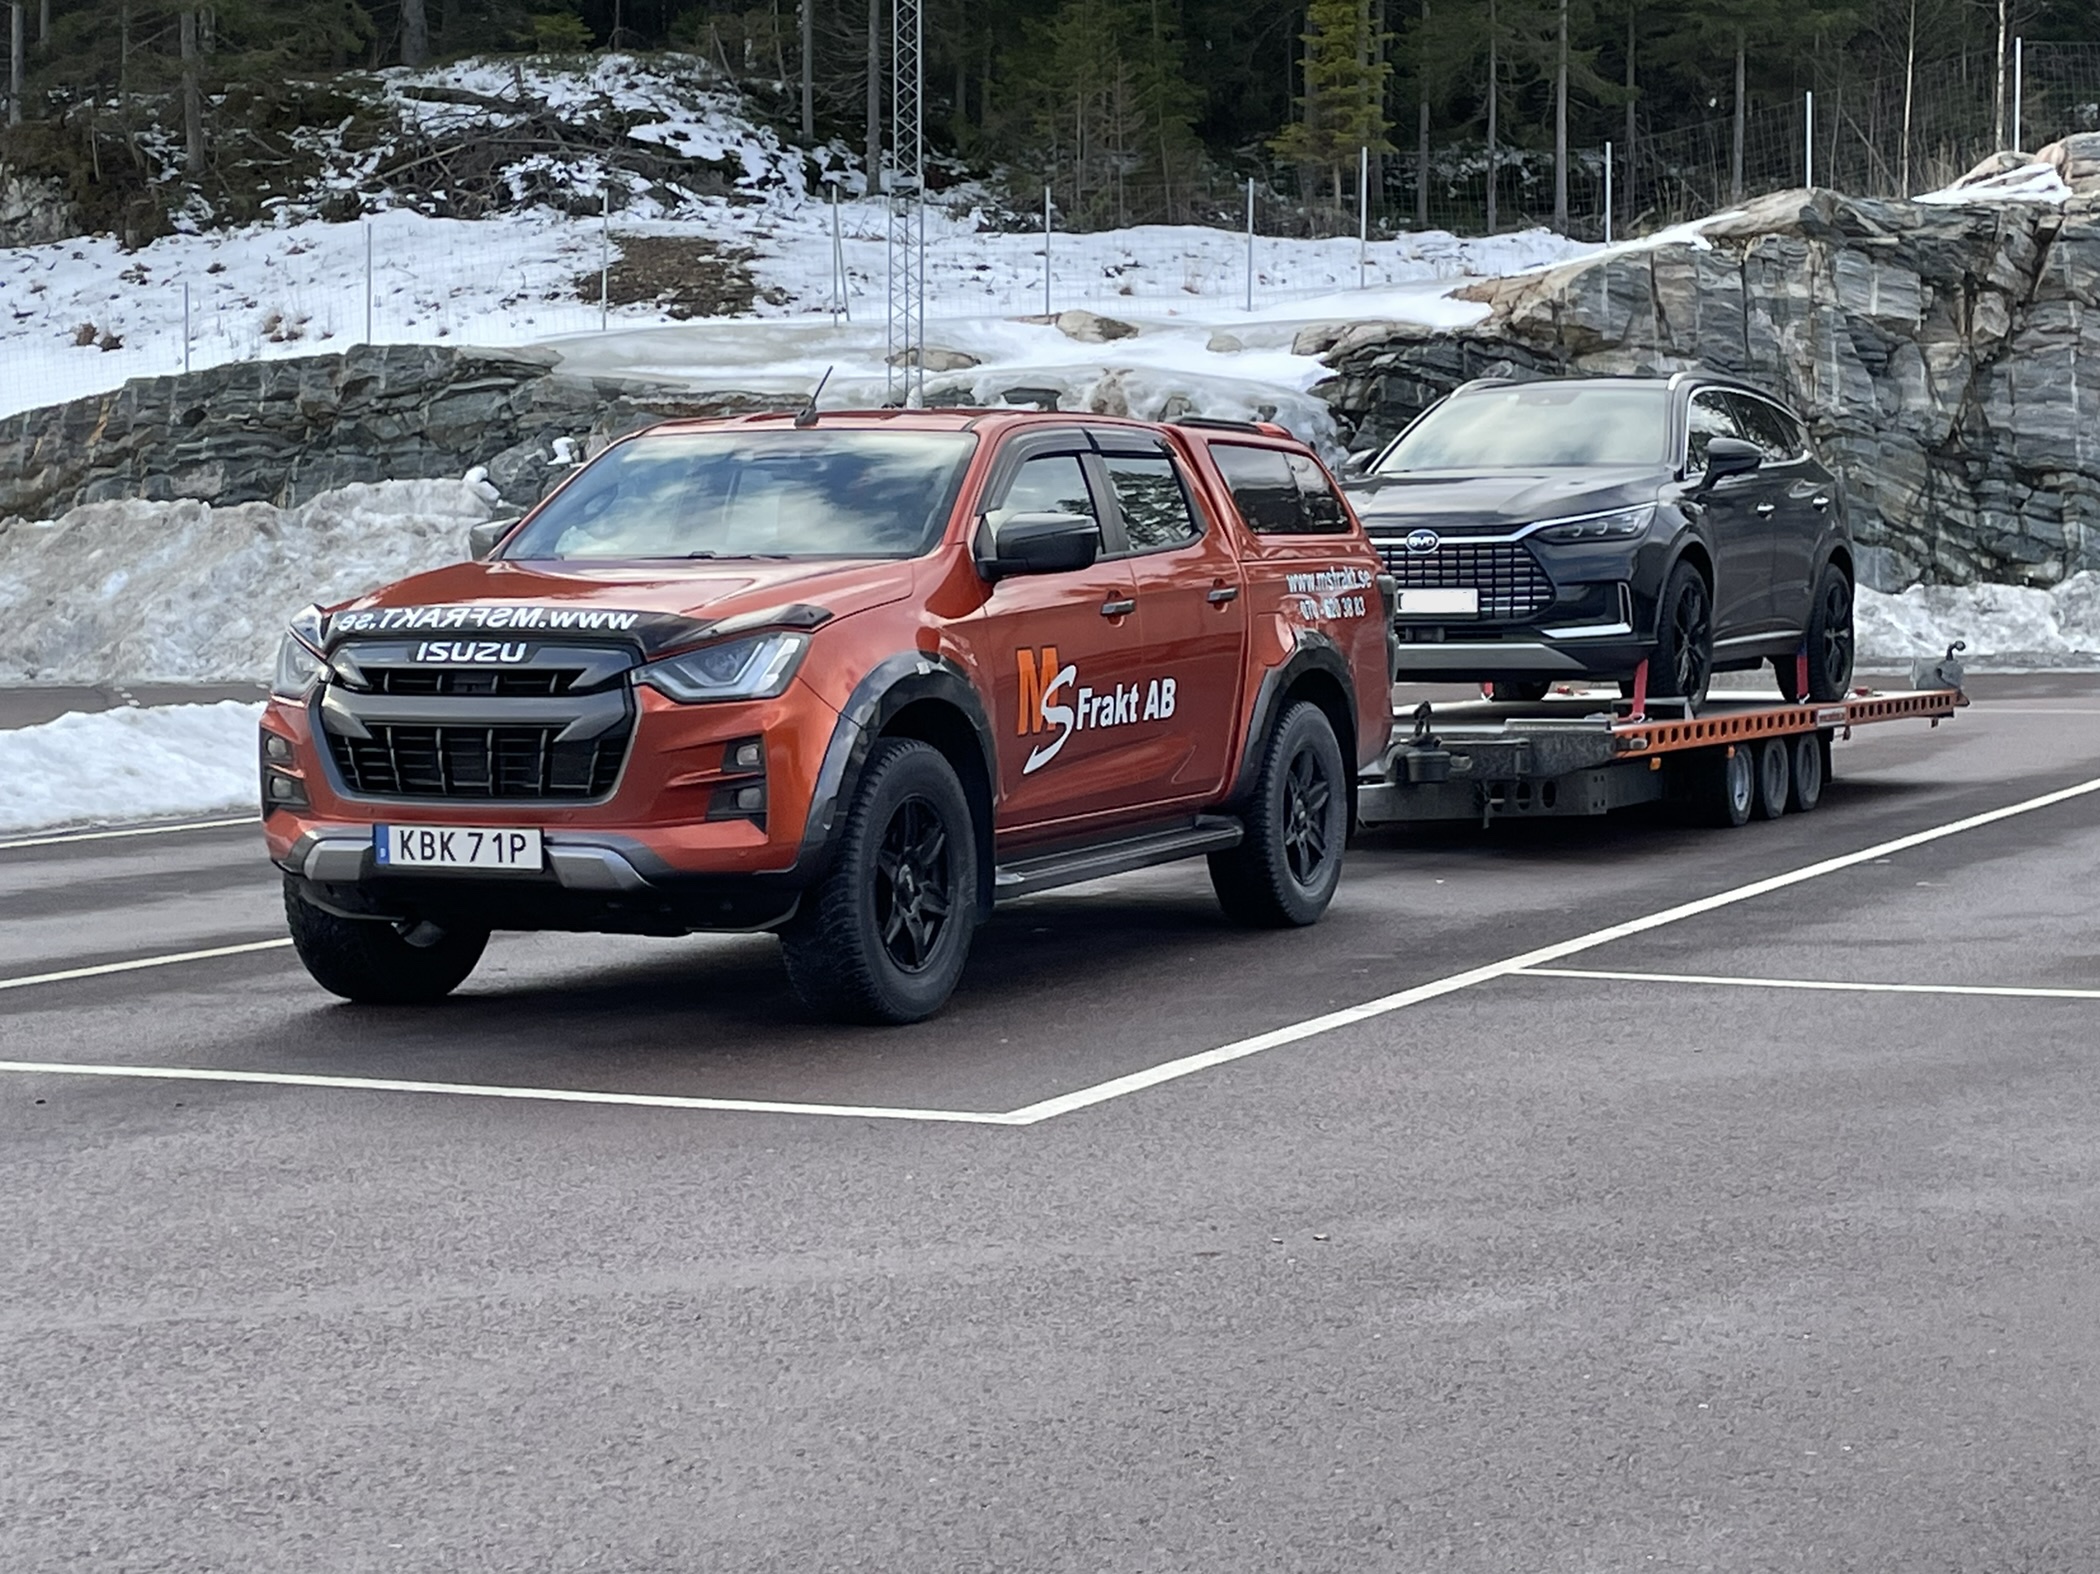 Fordonstransport Västerås